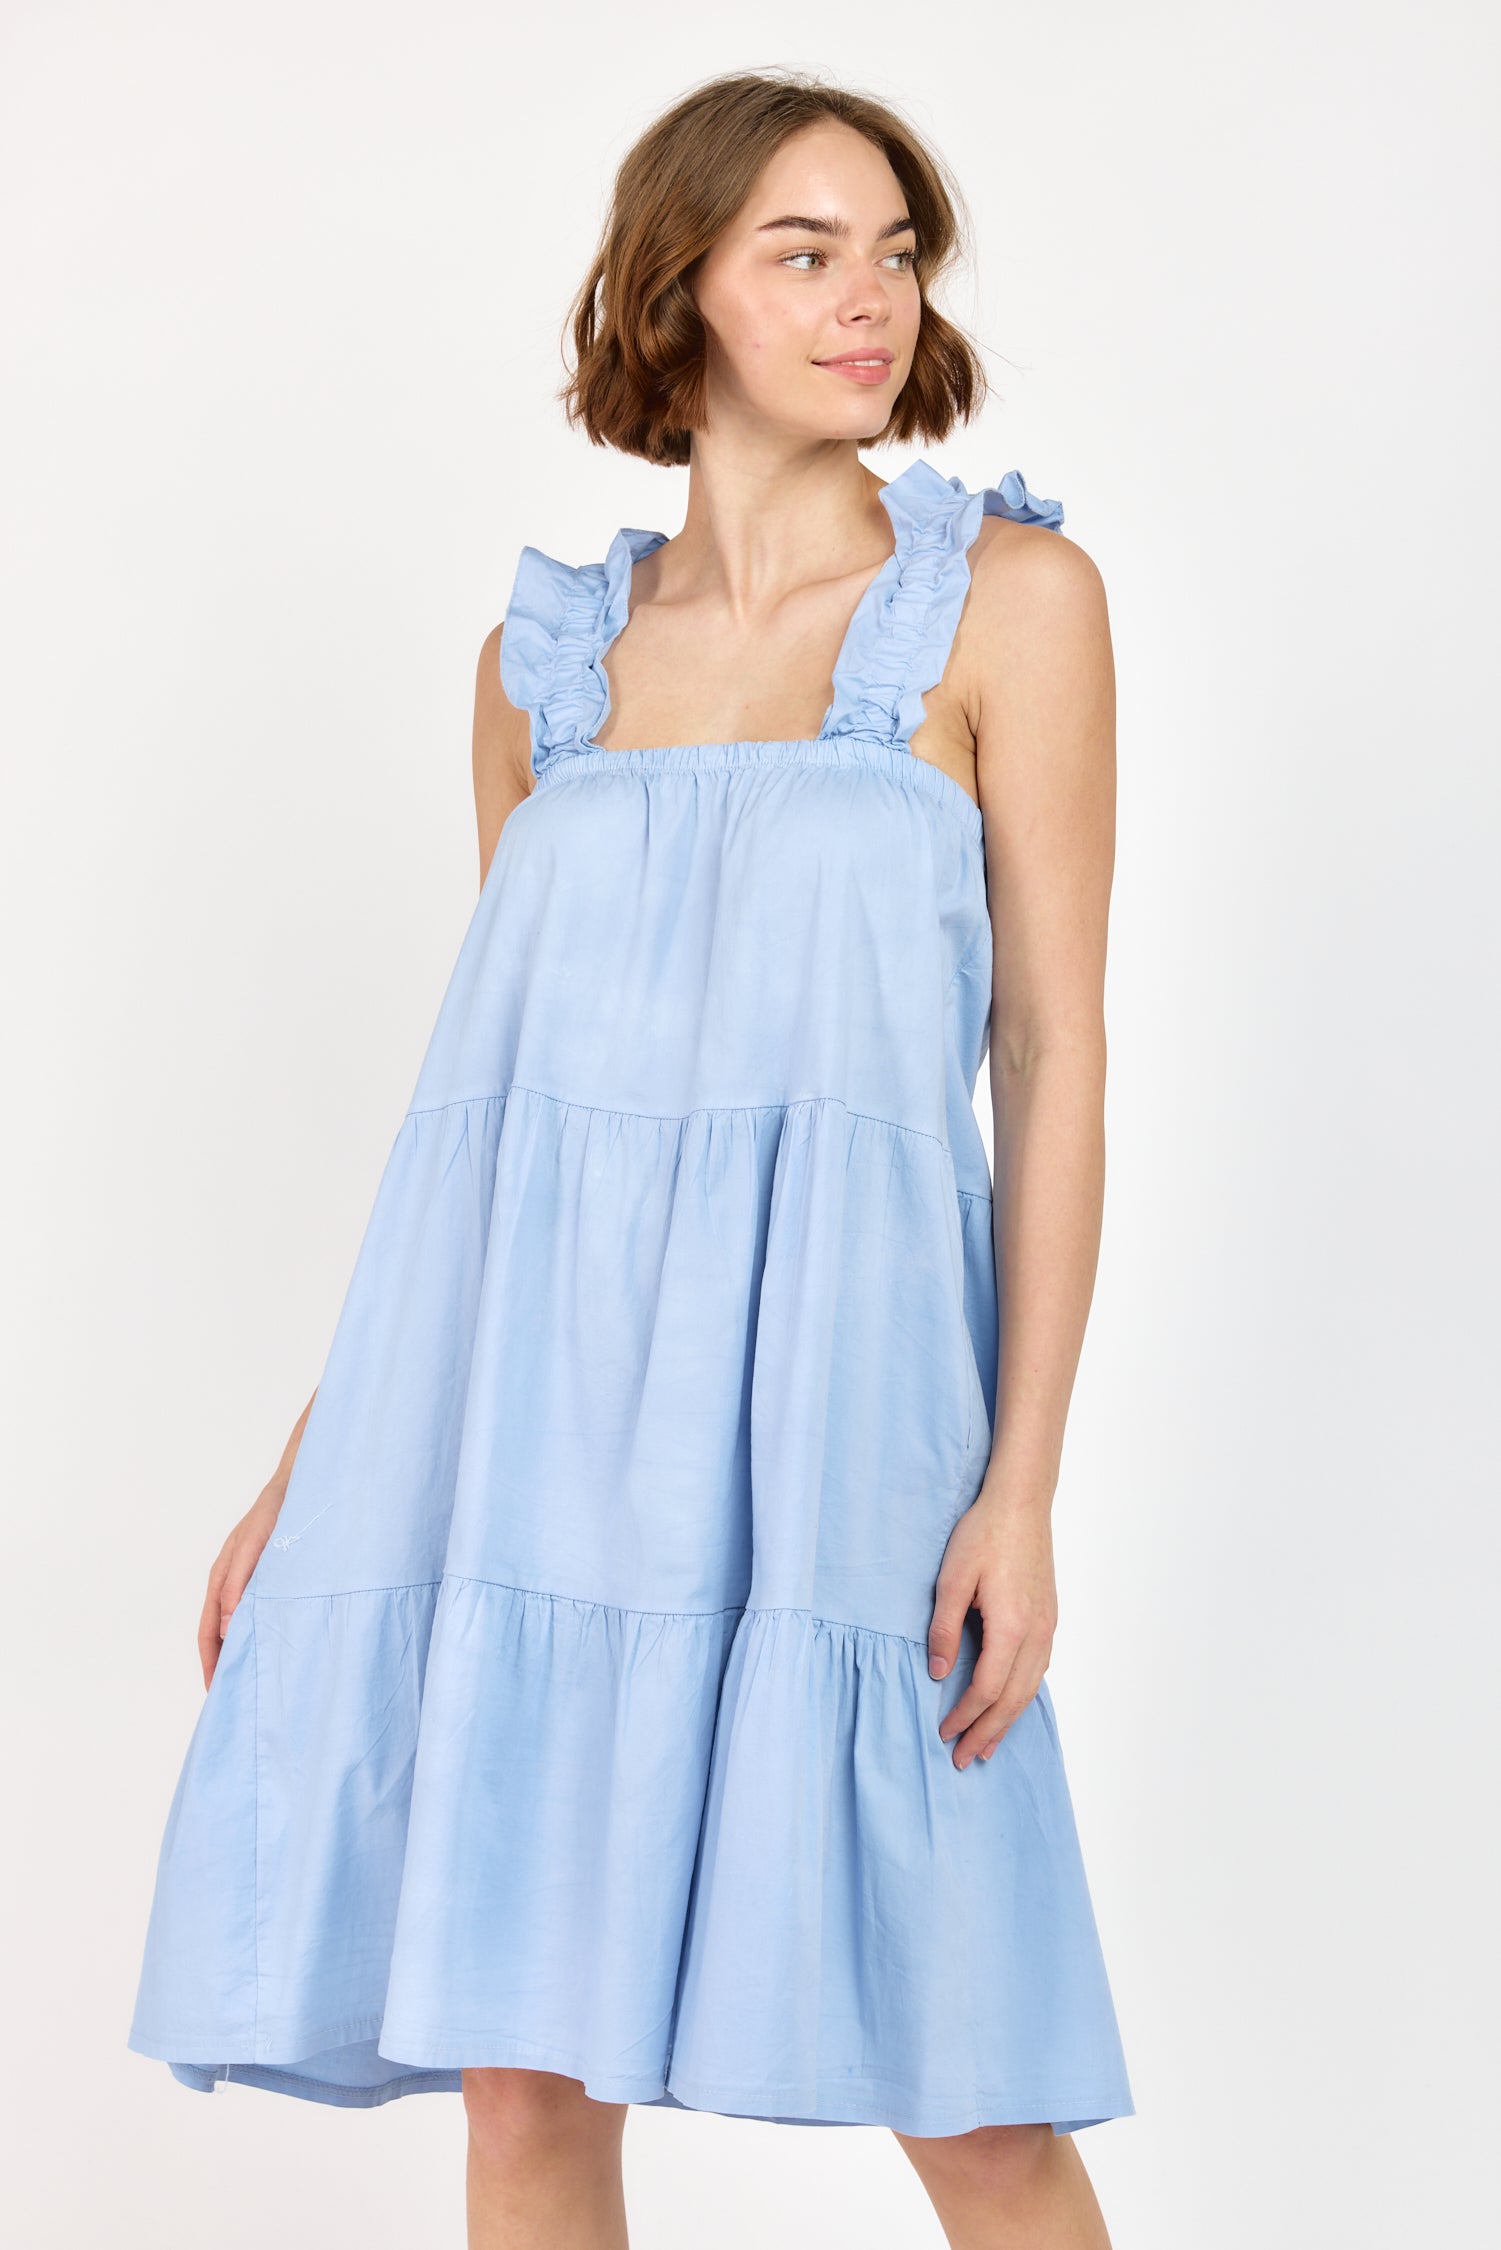 DALE DRESS | Dresses | Cotton, Dresses, Short Dresses | shop-sofia